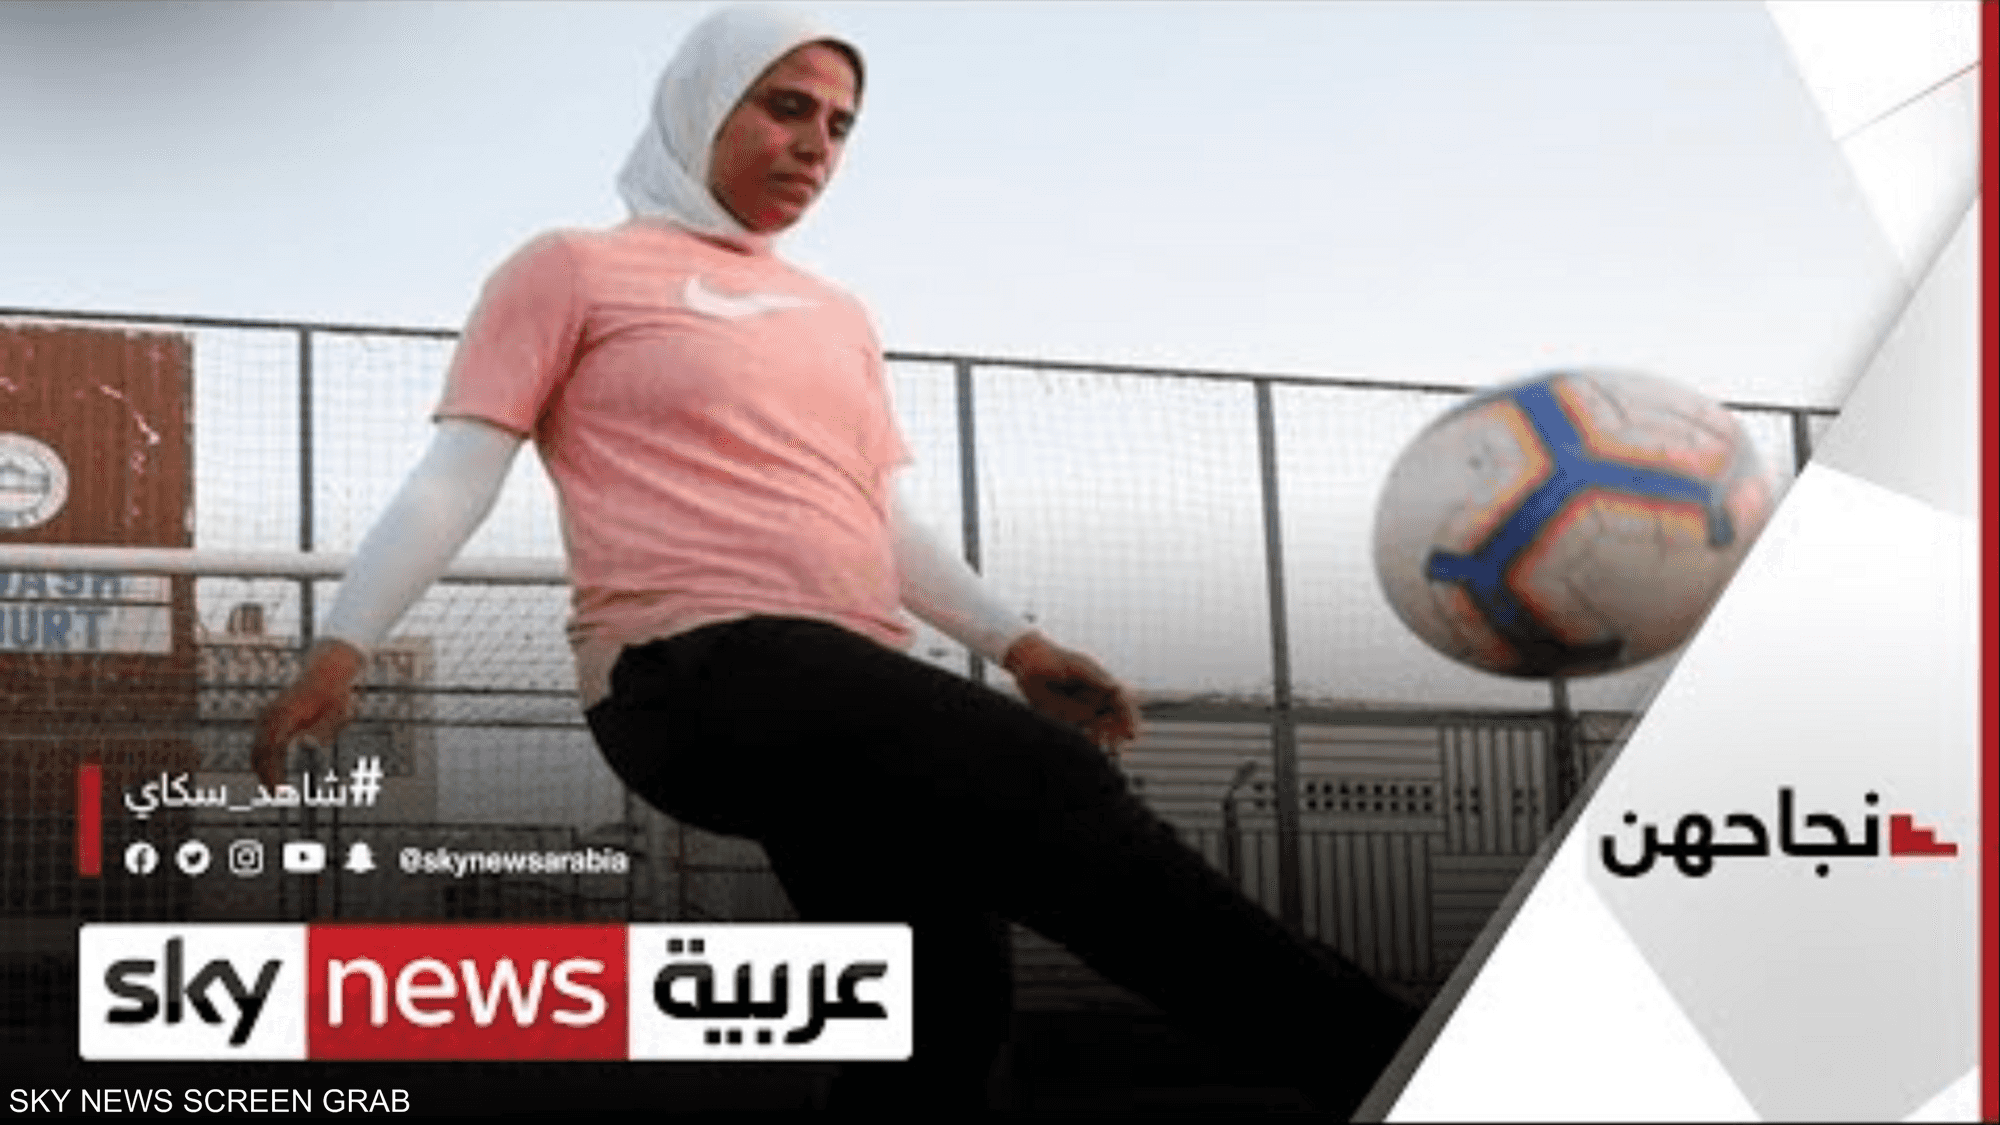 فايزة حيدر.. مصرية عشقت كرة القدم فدربت فريقا من الرجال